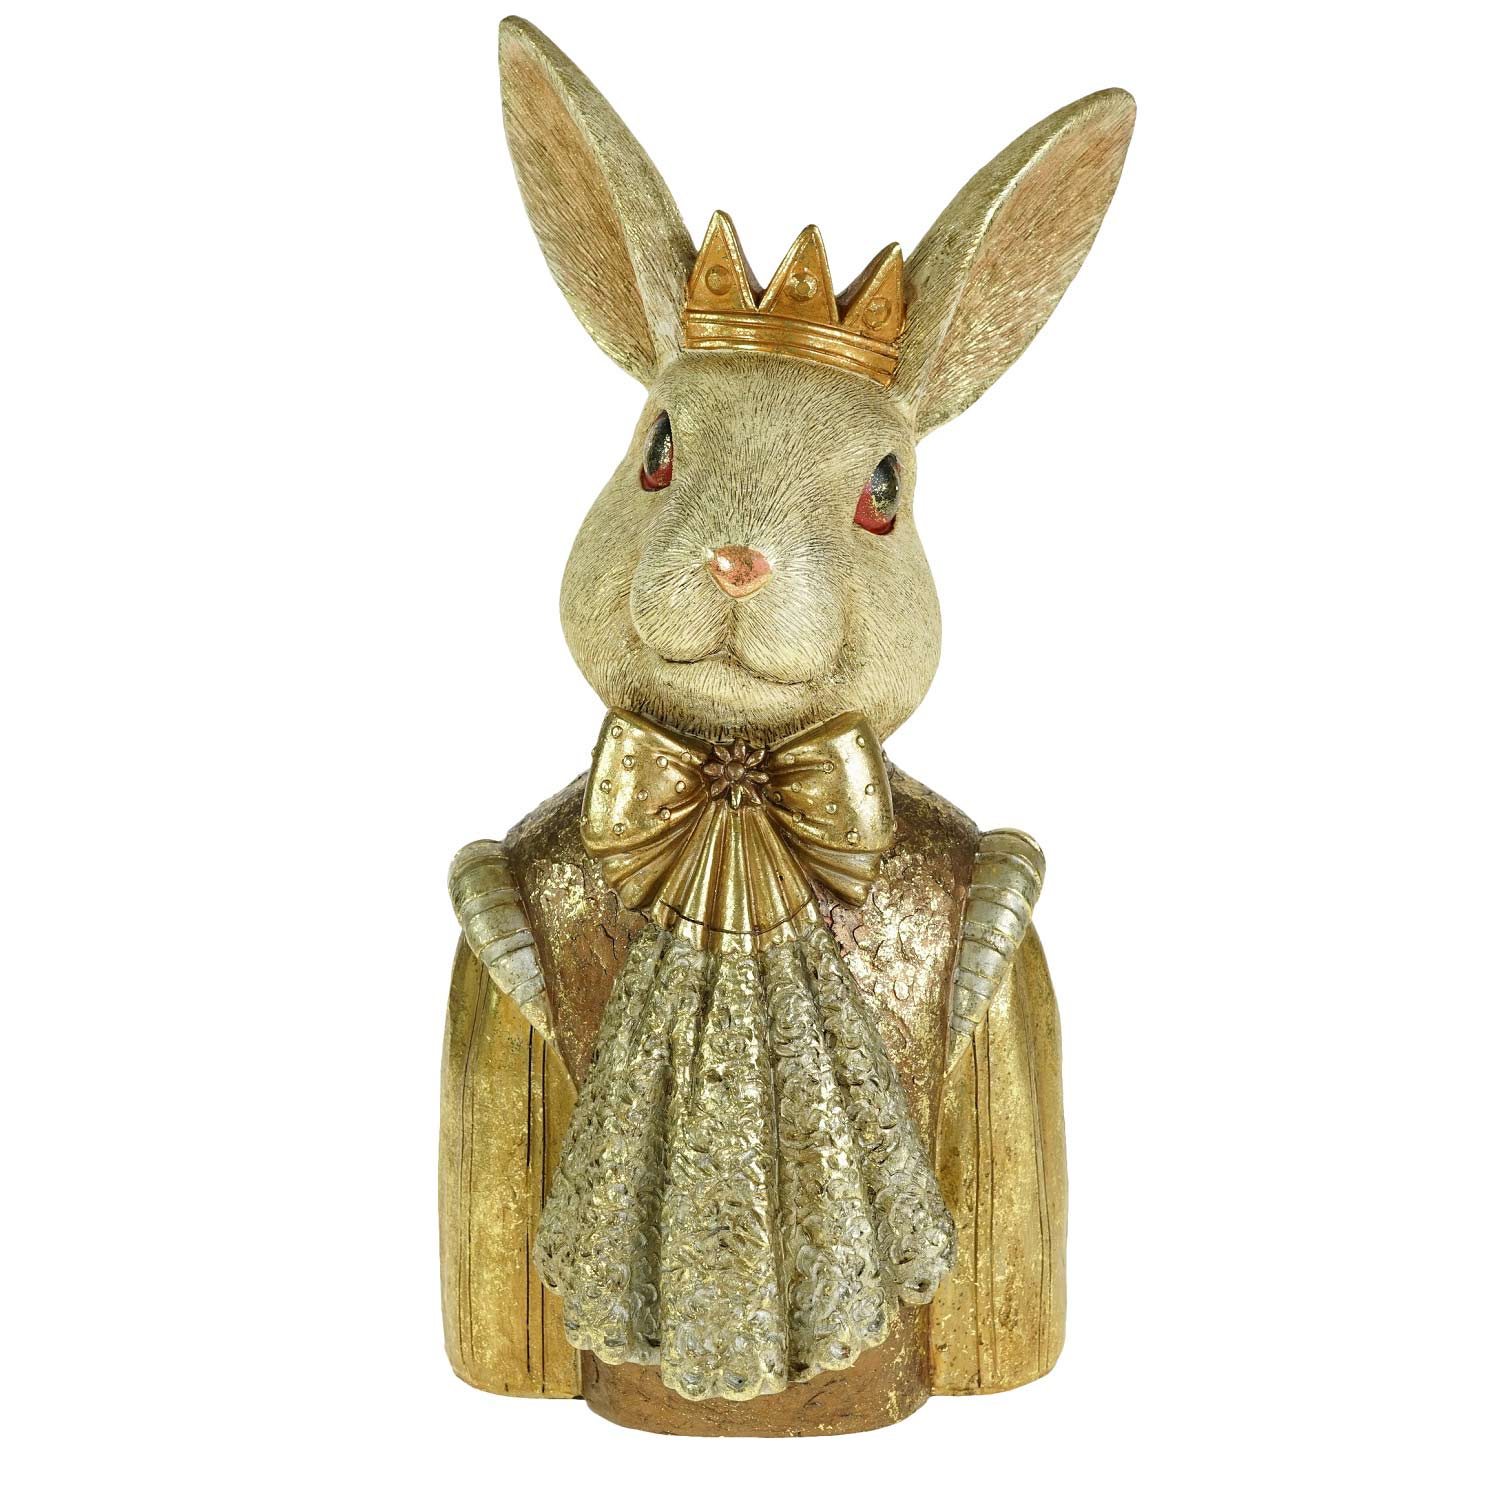 Arany színű, masnis csipke zsabóval díszített, koronát viselő nyuszi mellszobor.